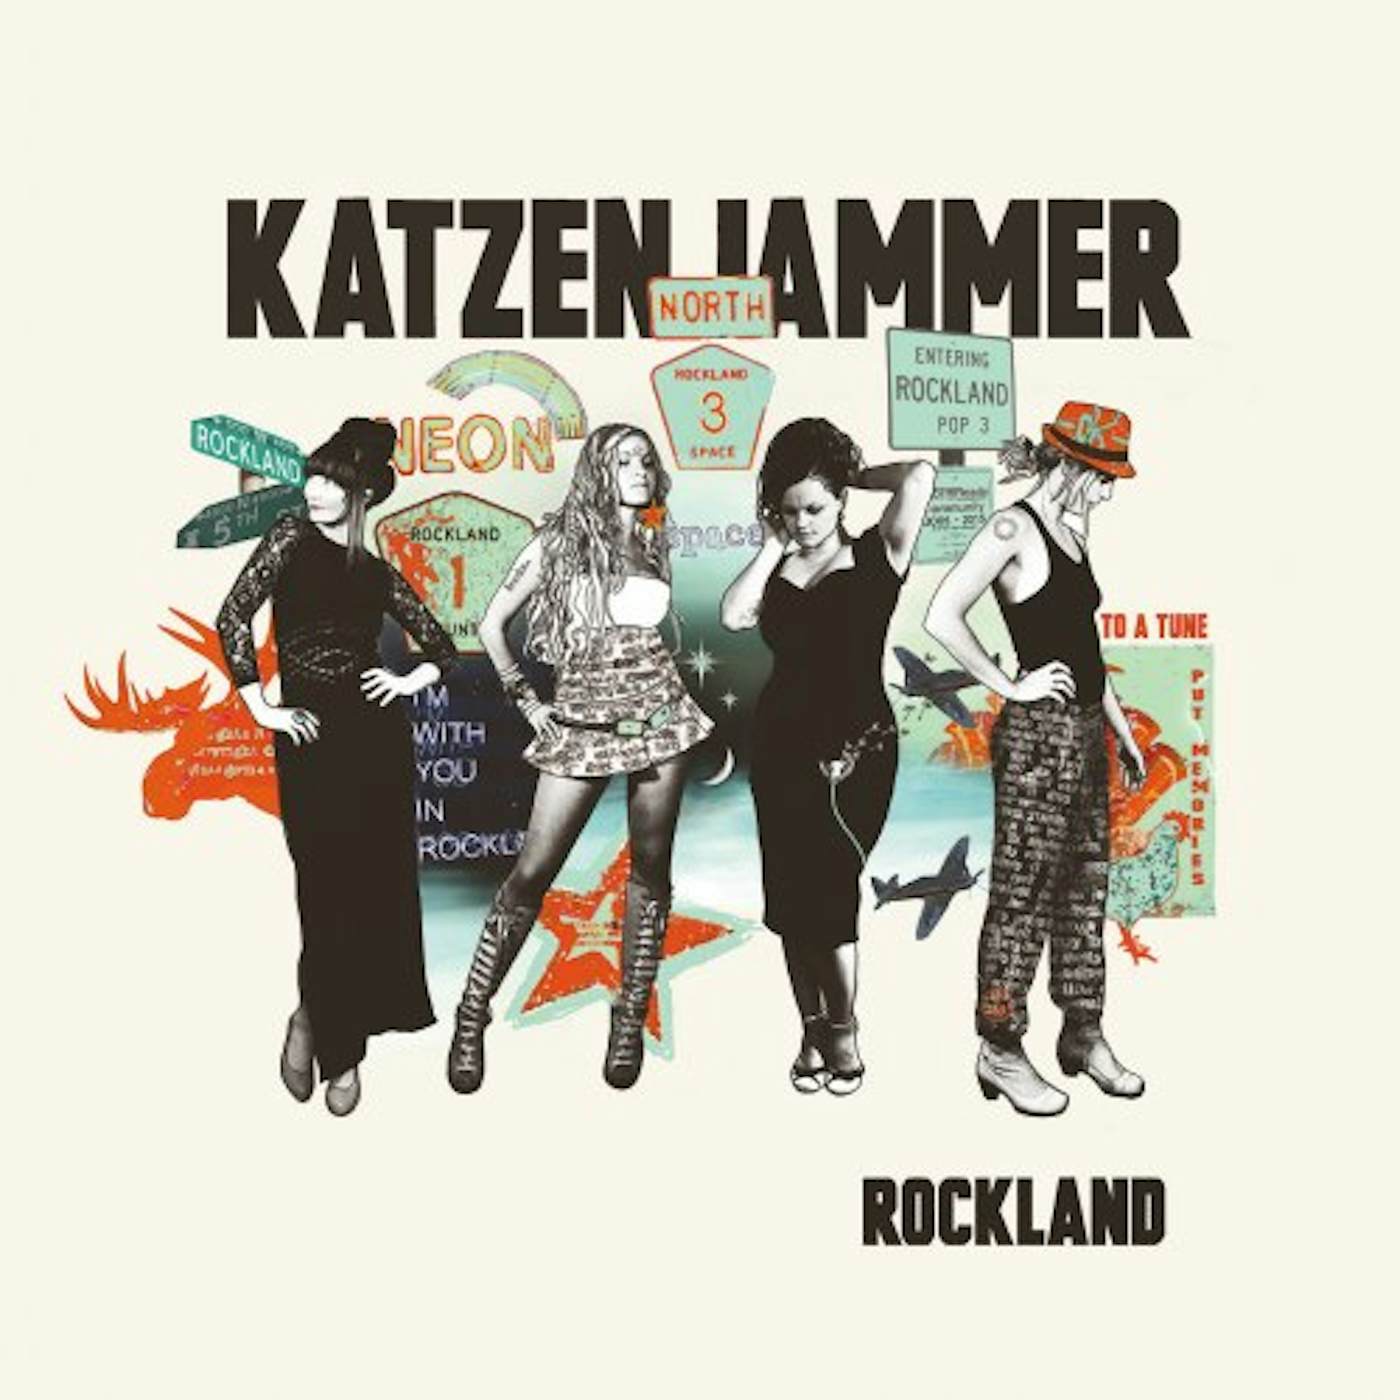 Katzenjammer ROCKLAND Vinyl Record